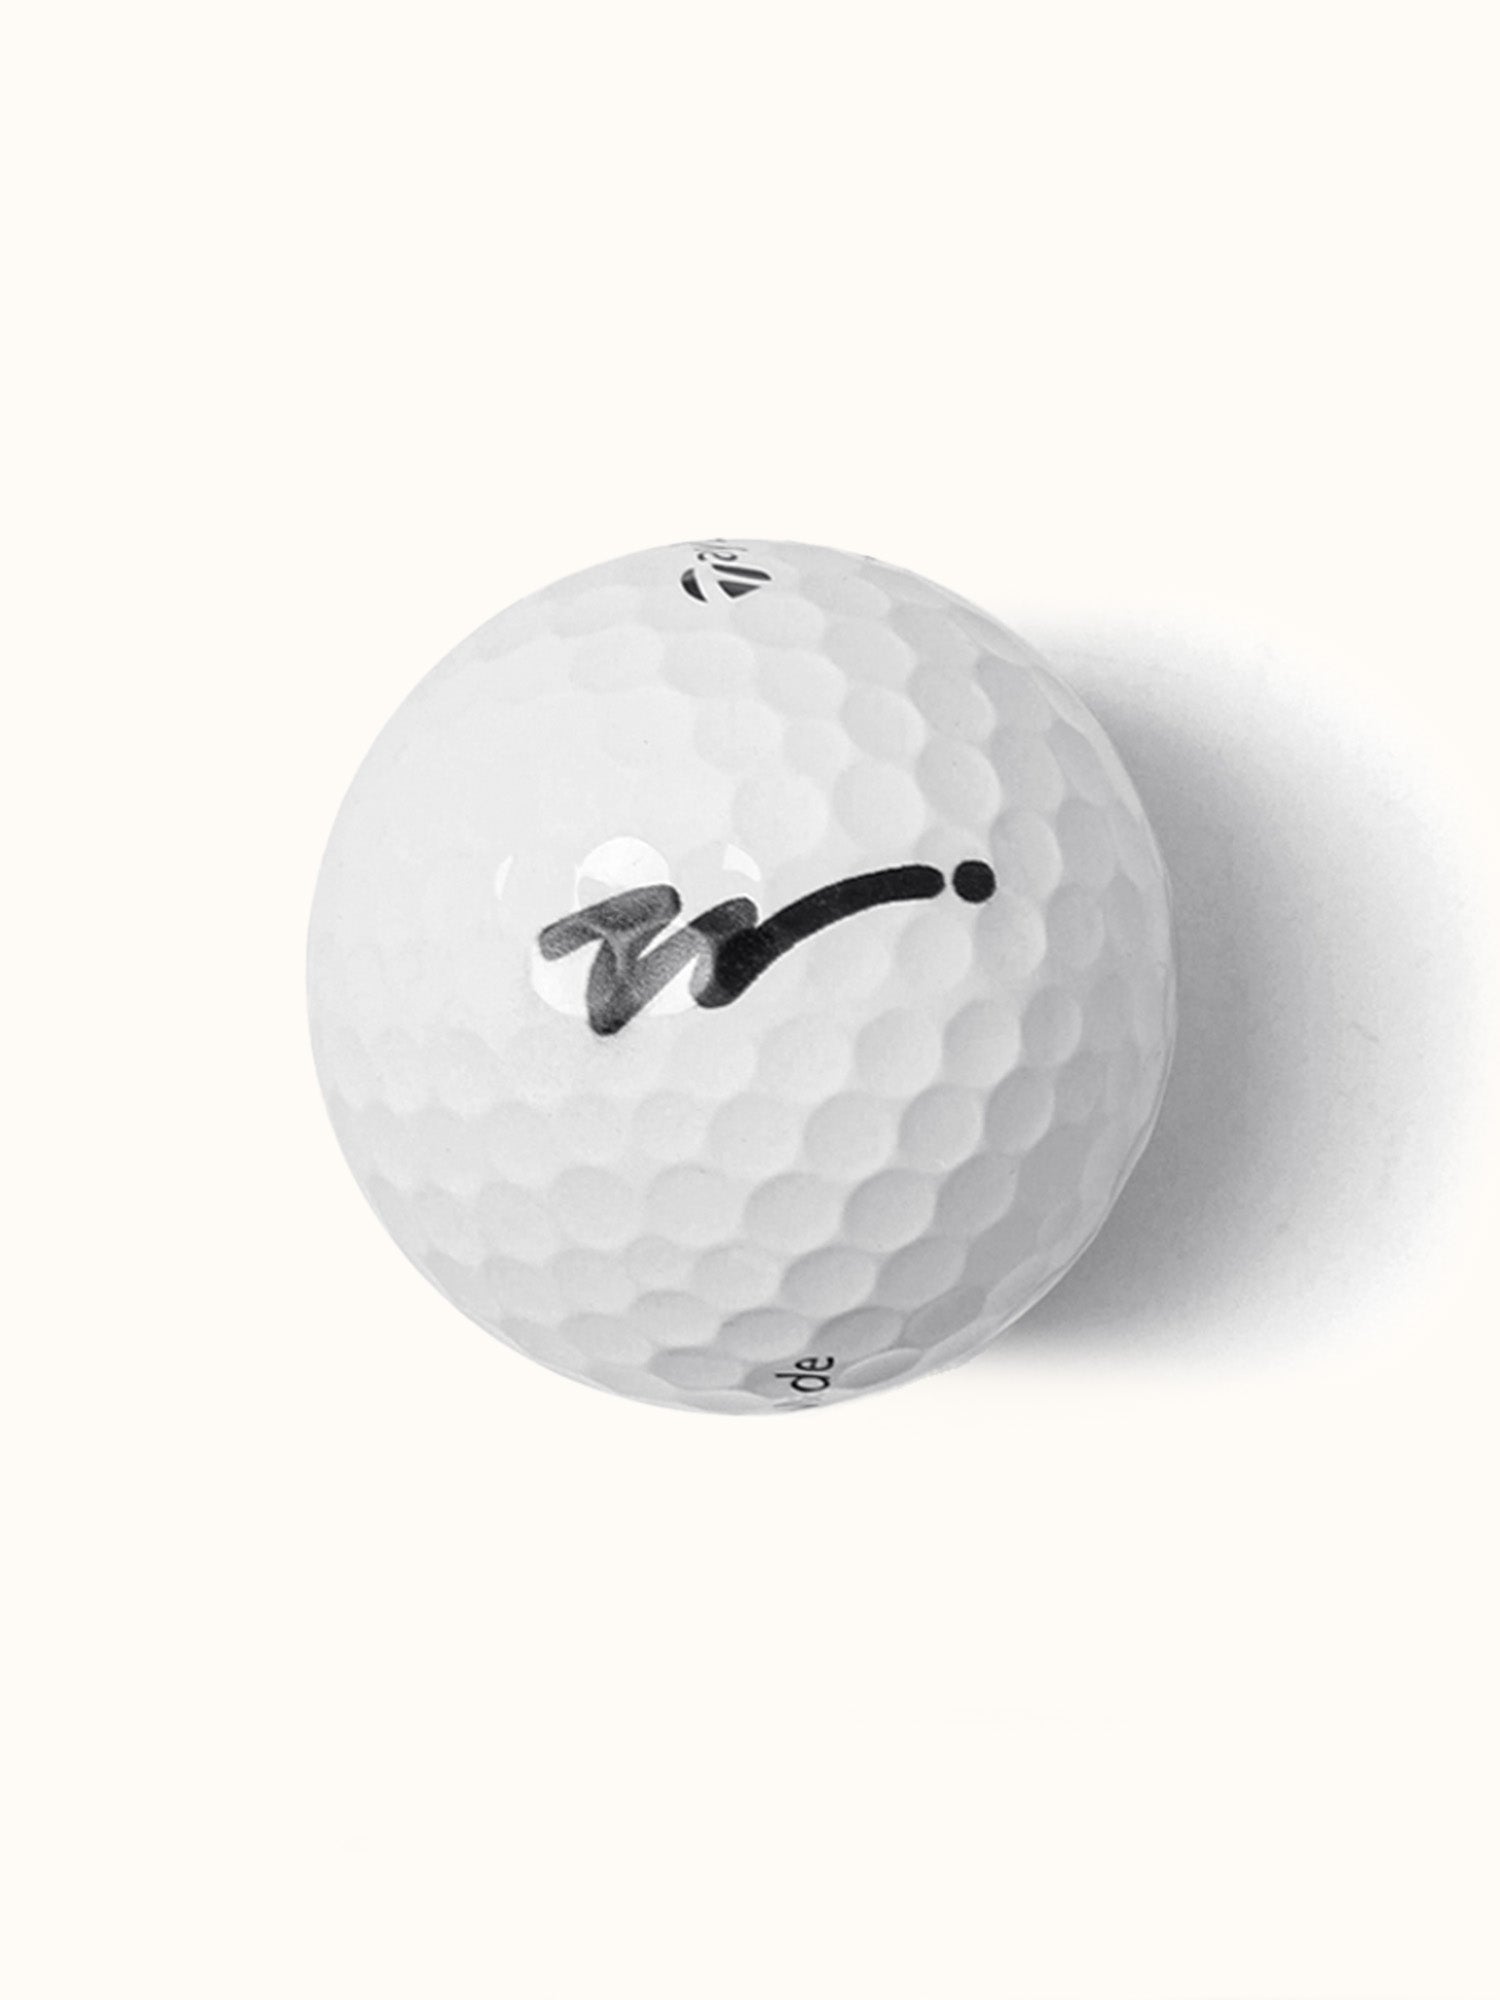 TaylorMade TP5 Walker Bounce Golf Balls